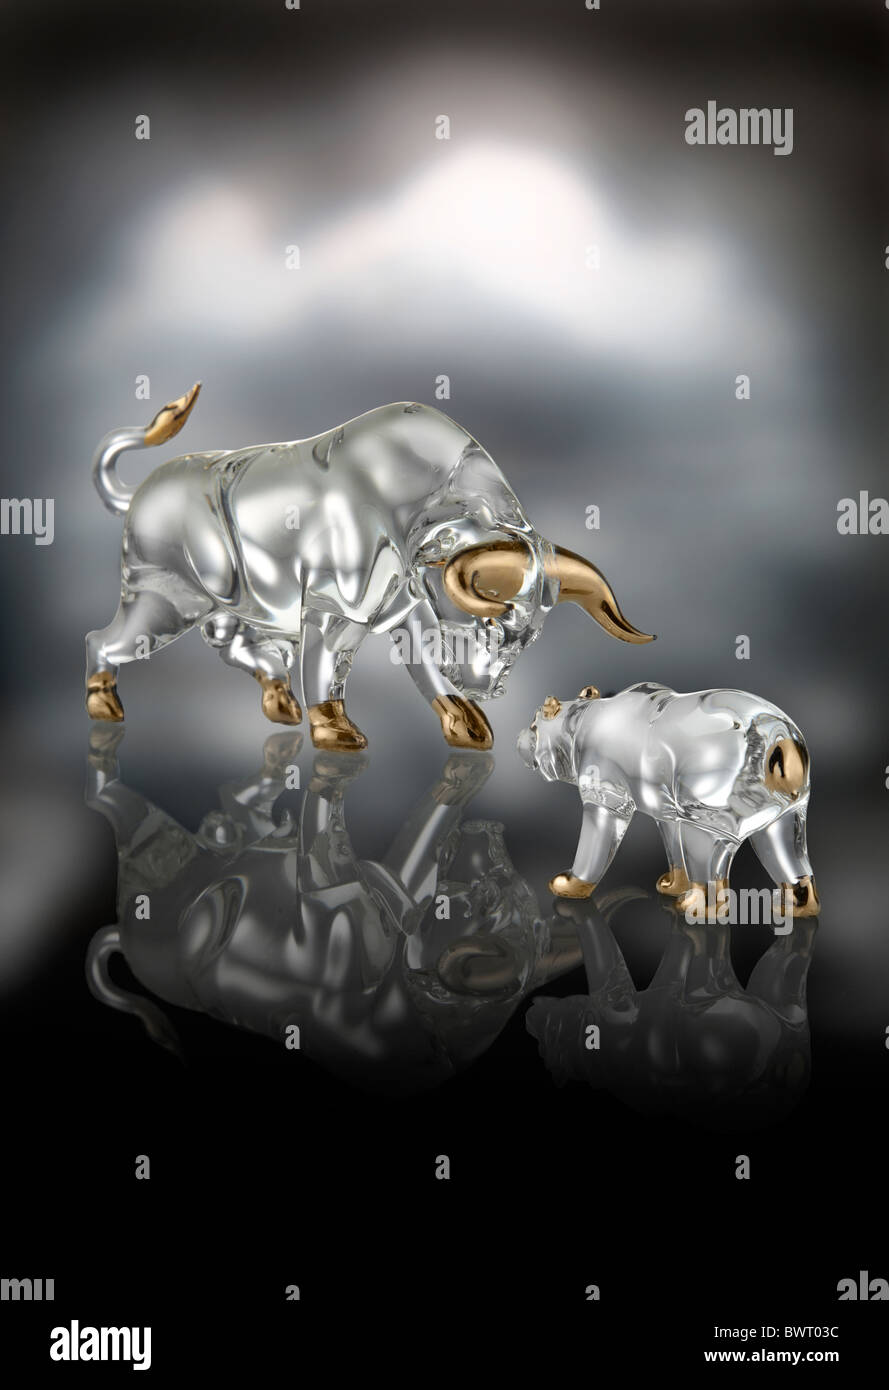 Bull vs Orso, crystal figurine che rappresentano il mercato finanziario la concorrenza. Il Mercato Bull è vincente in questa immagine concettuale. Foto Stock